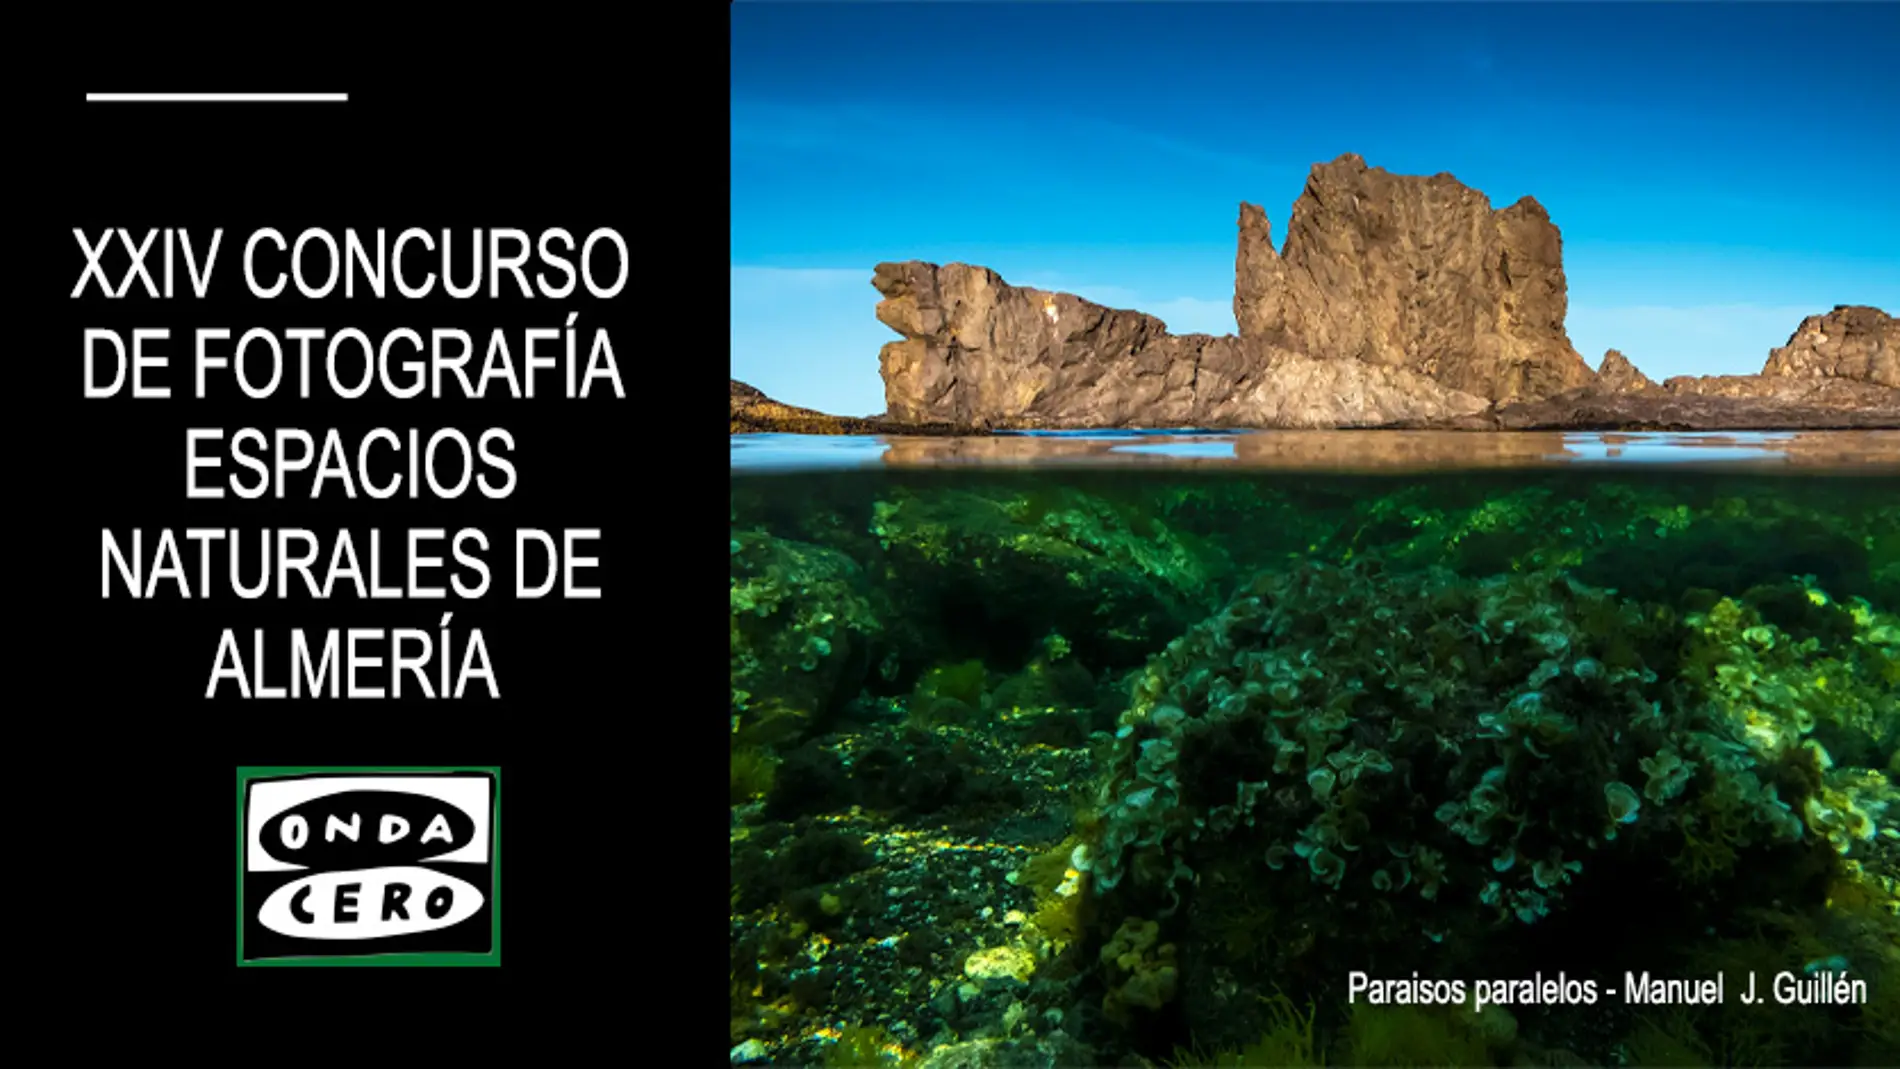 Nuevas bases y novedades en el XXIV Concurso de Fotografía 'Espacios Naturales de Almería'